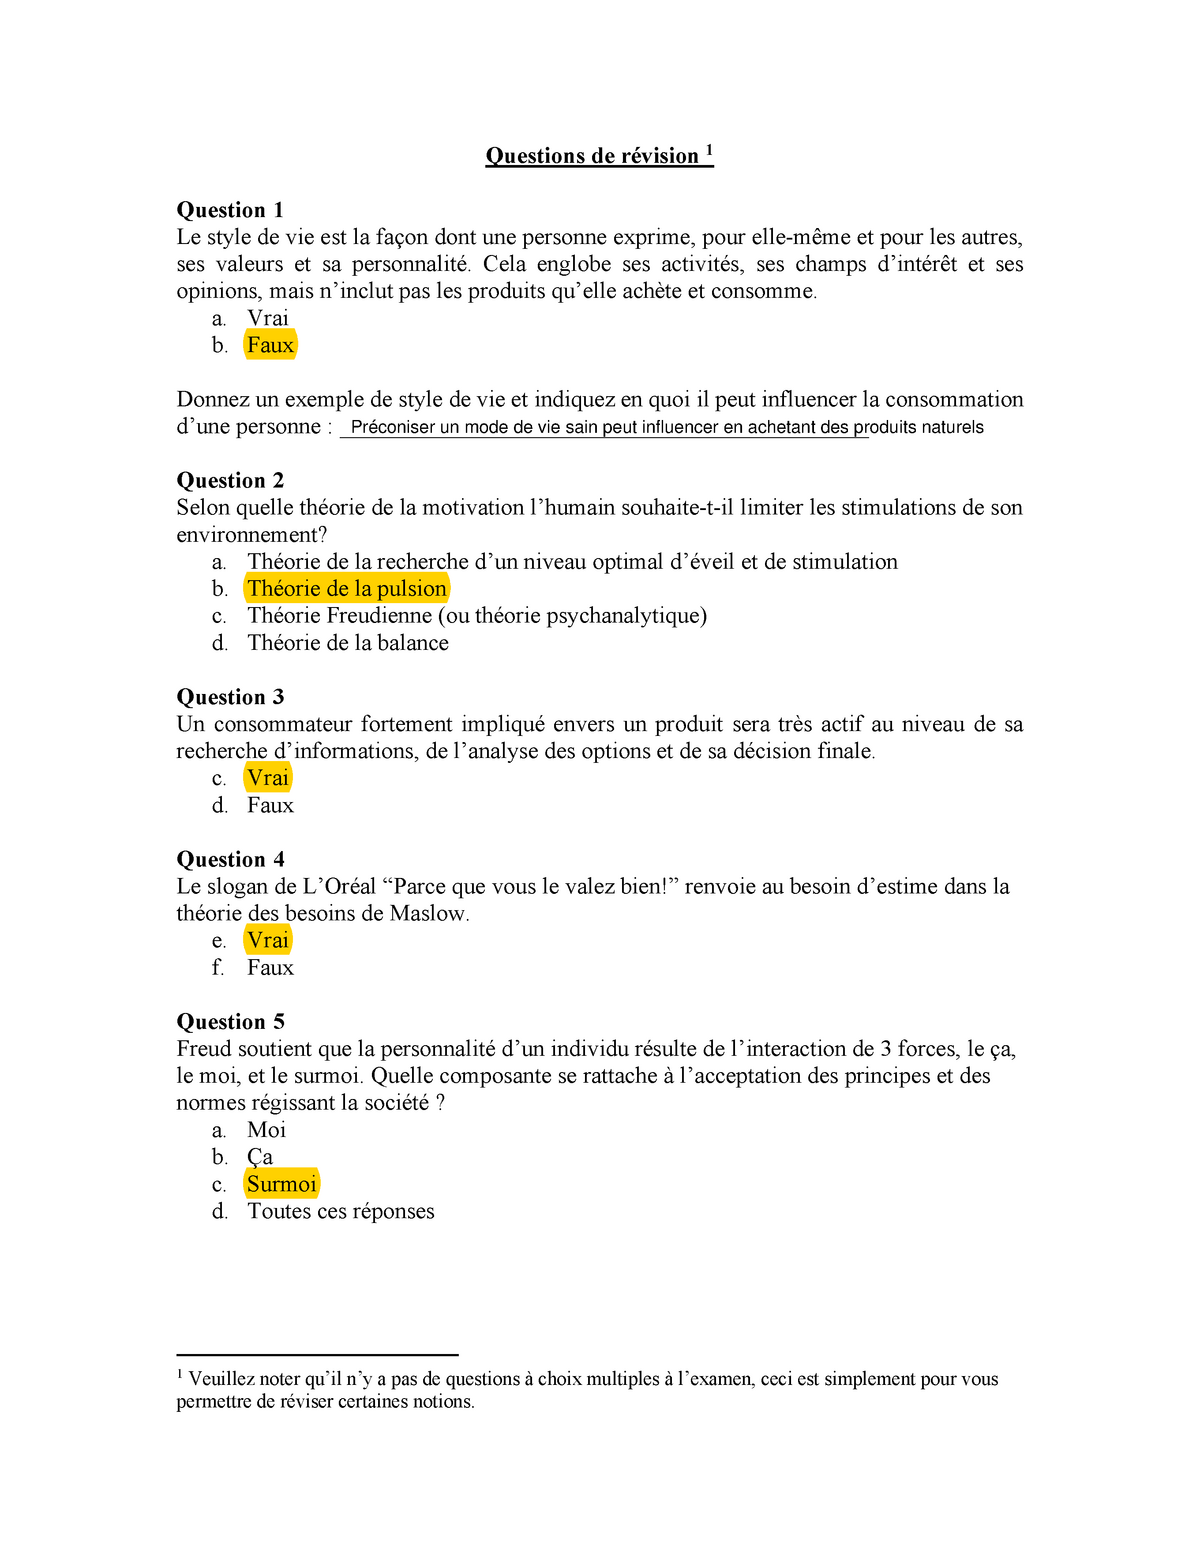 Quiz Revision Examen 1 Questions De Revision 1 Question 1 Le Style De Vie Est La Facon Dont Une Studocu